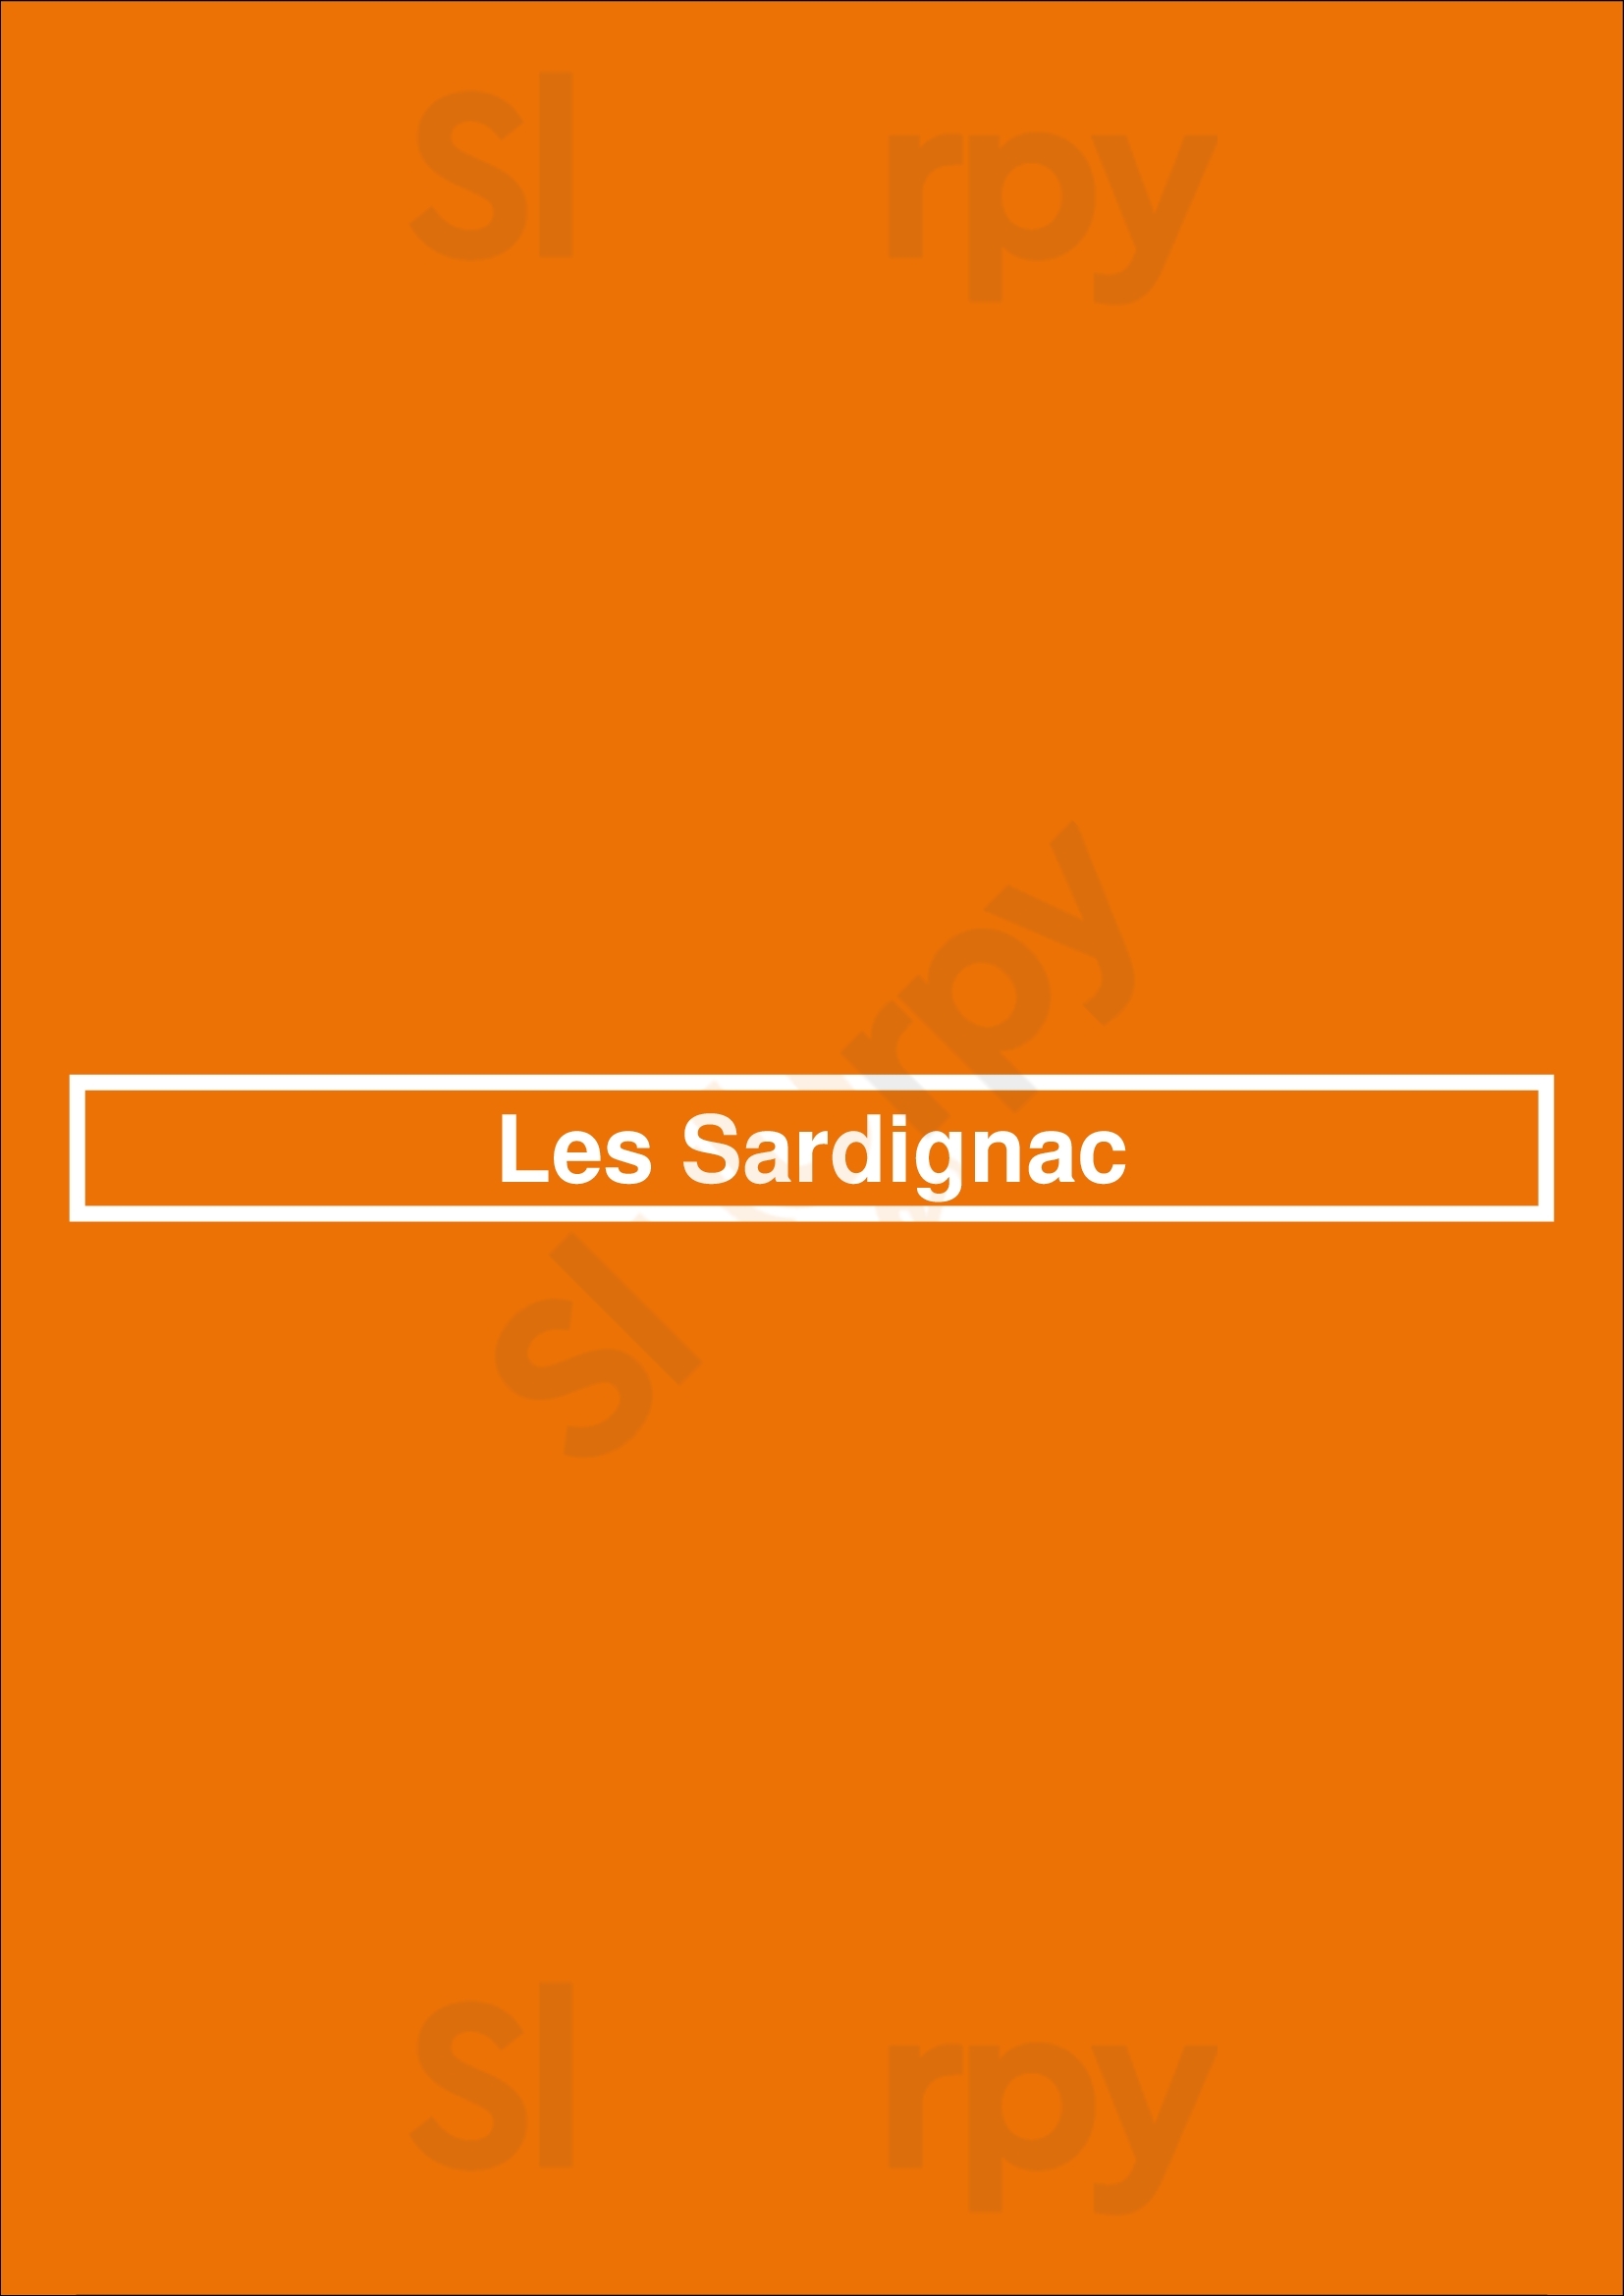 Les Sardignac Paris Menu - 1